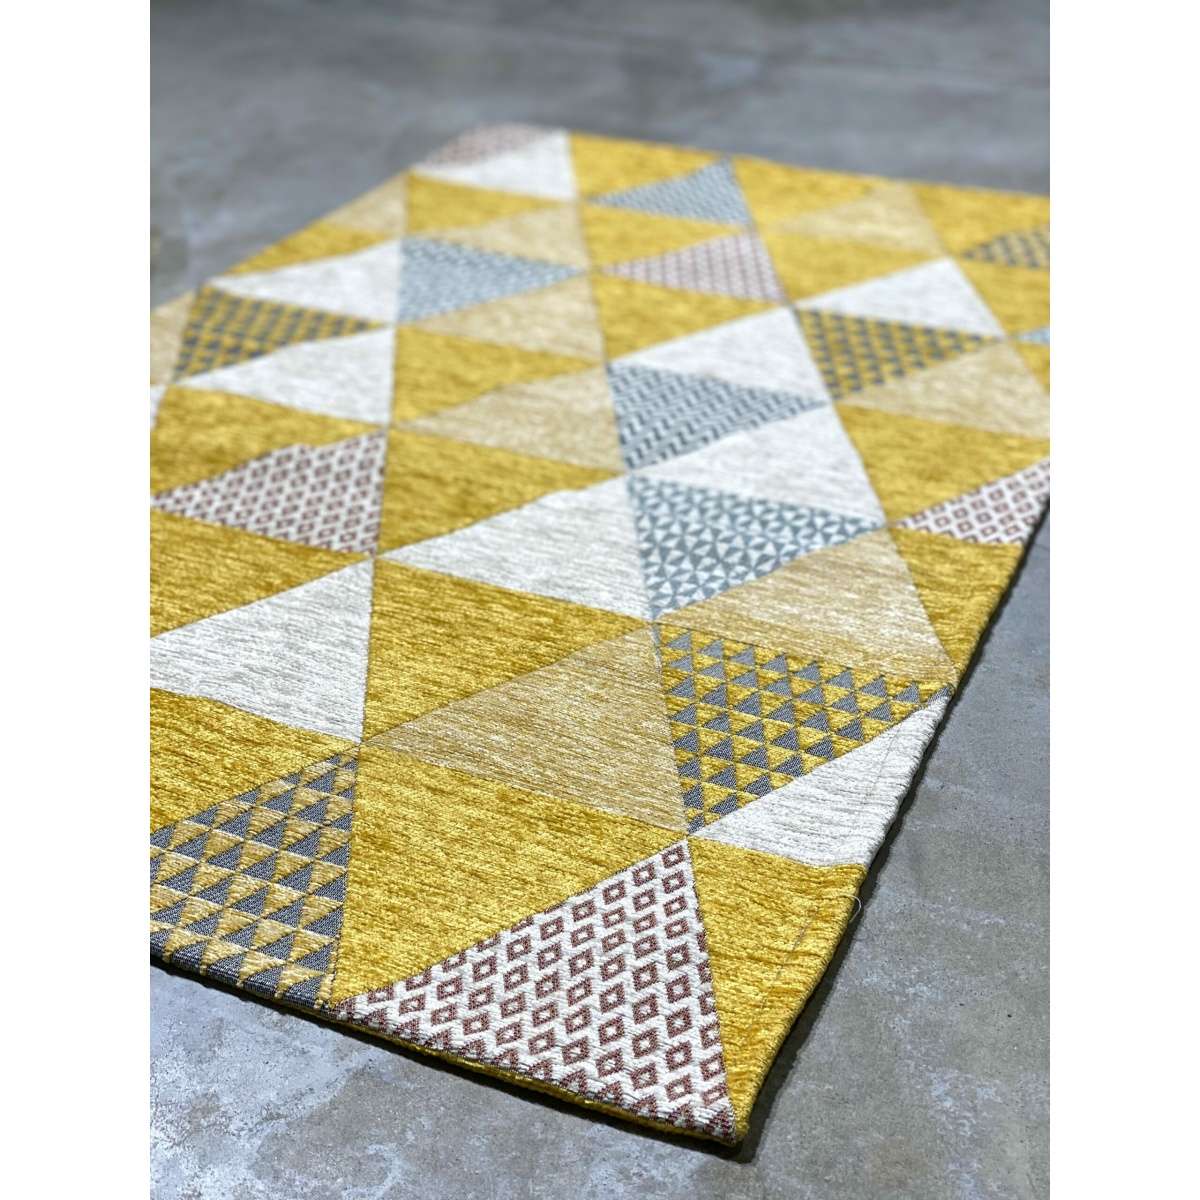 Immagine del prodotto Tappeto Triangoli Giallo Antiscivolo e Lavabile in Lavatrice | Pietro Zanetti Home